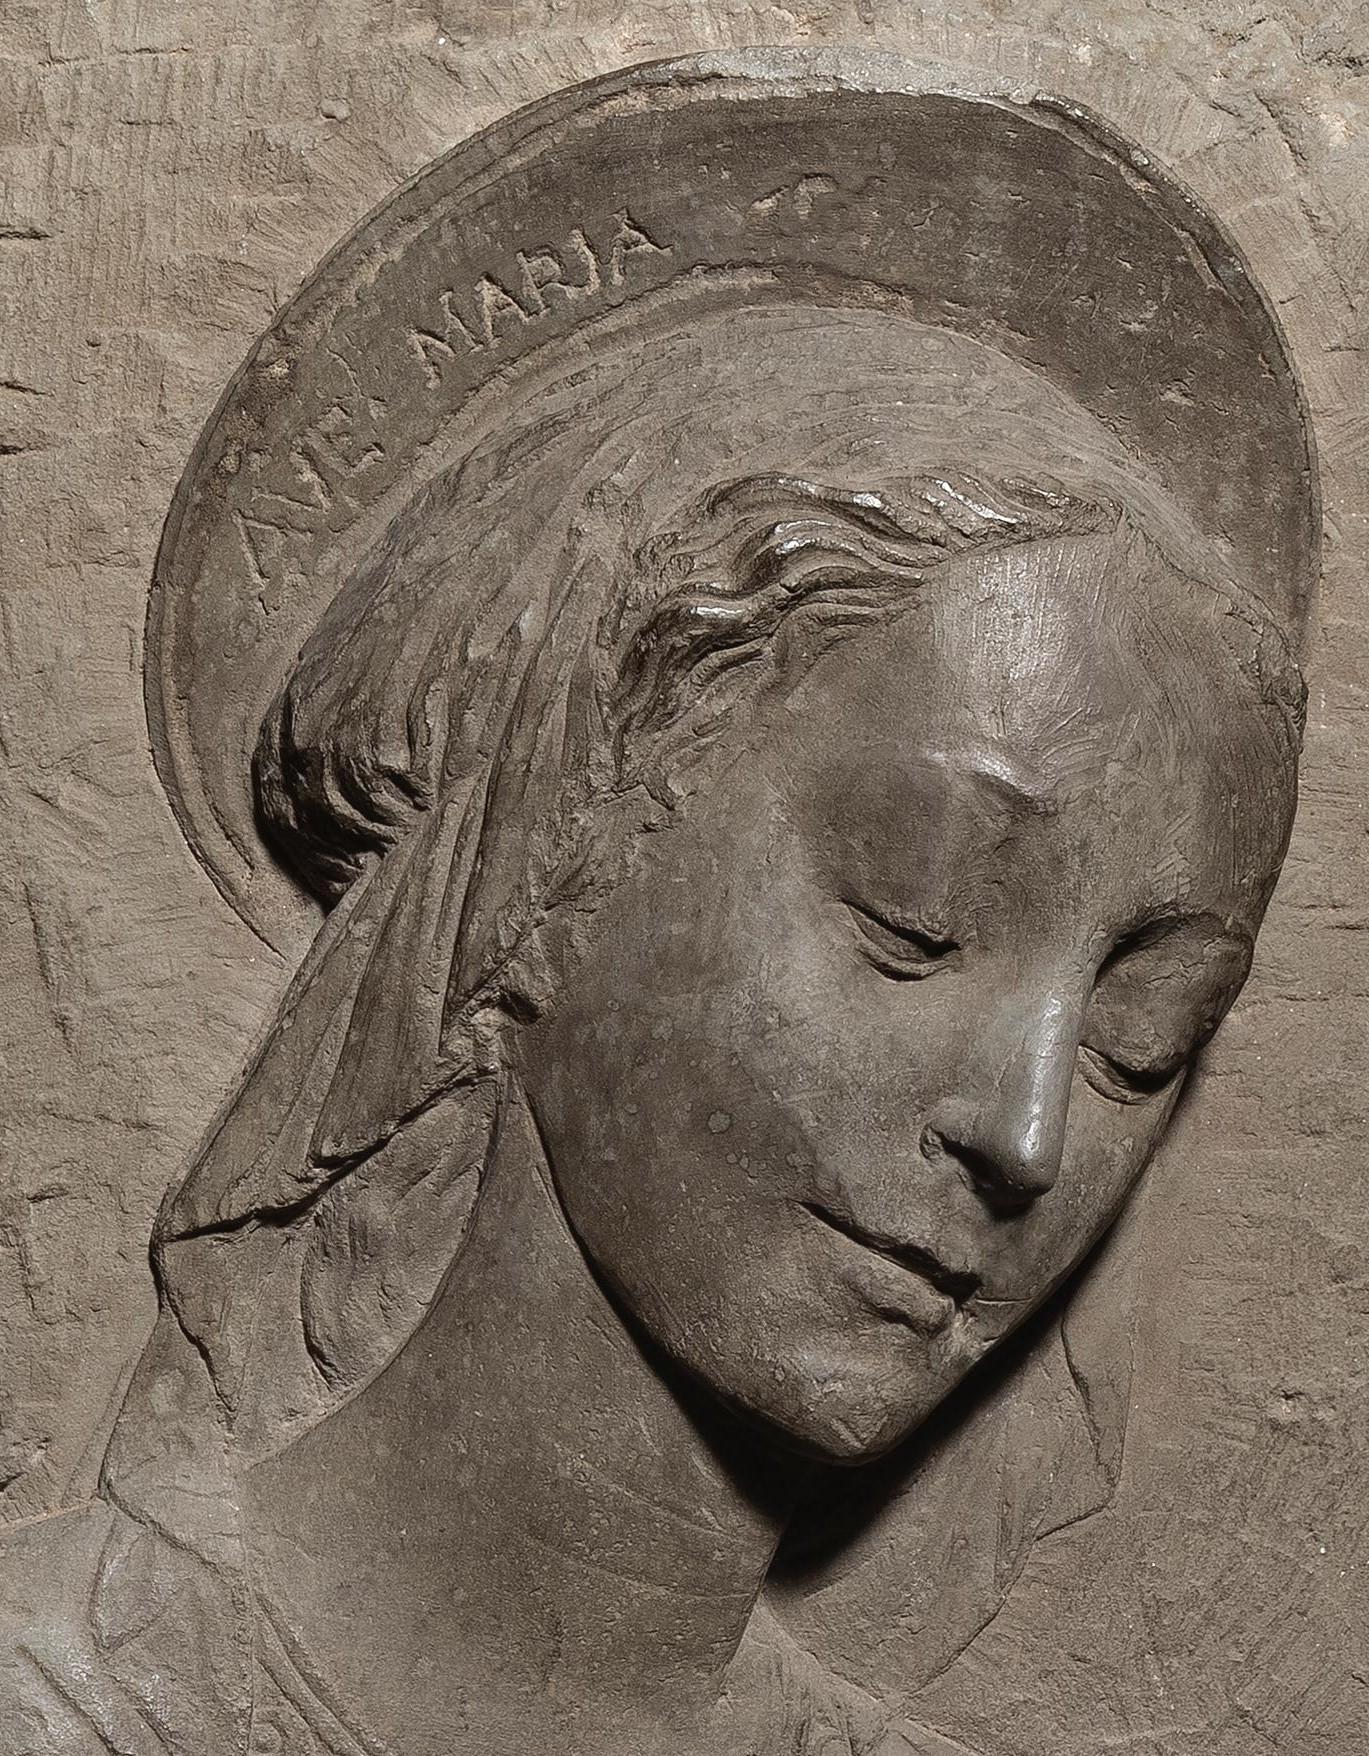 Fin du XVe siècle Par l'école Florentine Bas-relief de la Madonna à l'enfant - Sculpture de Florentine School of the late 15th century